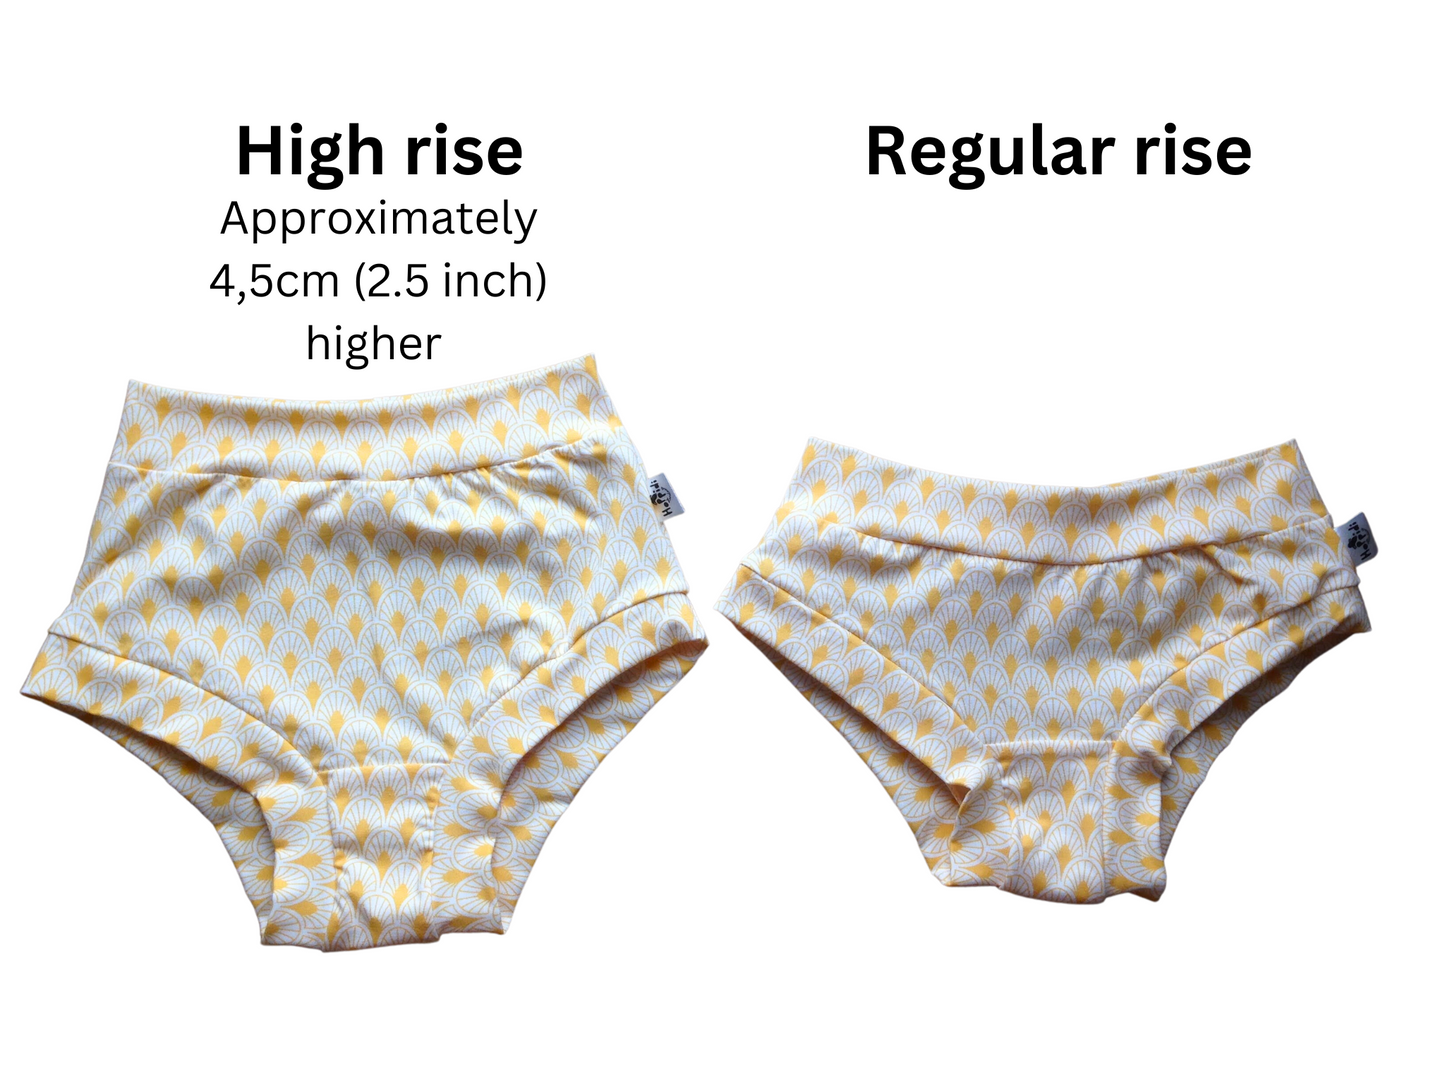 Stonewash dots high waisted organic women's boyleg or brief undies